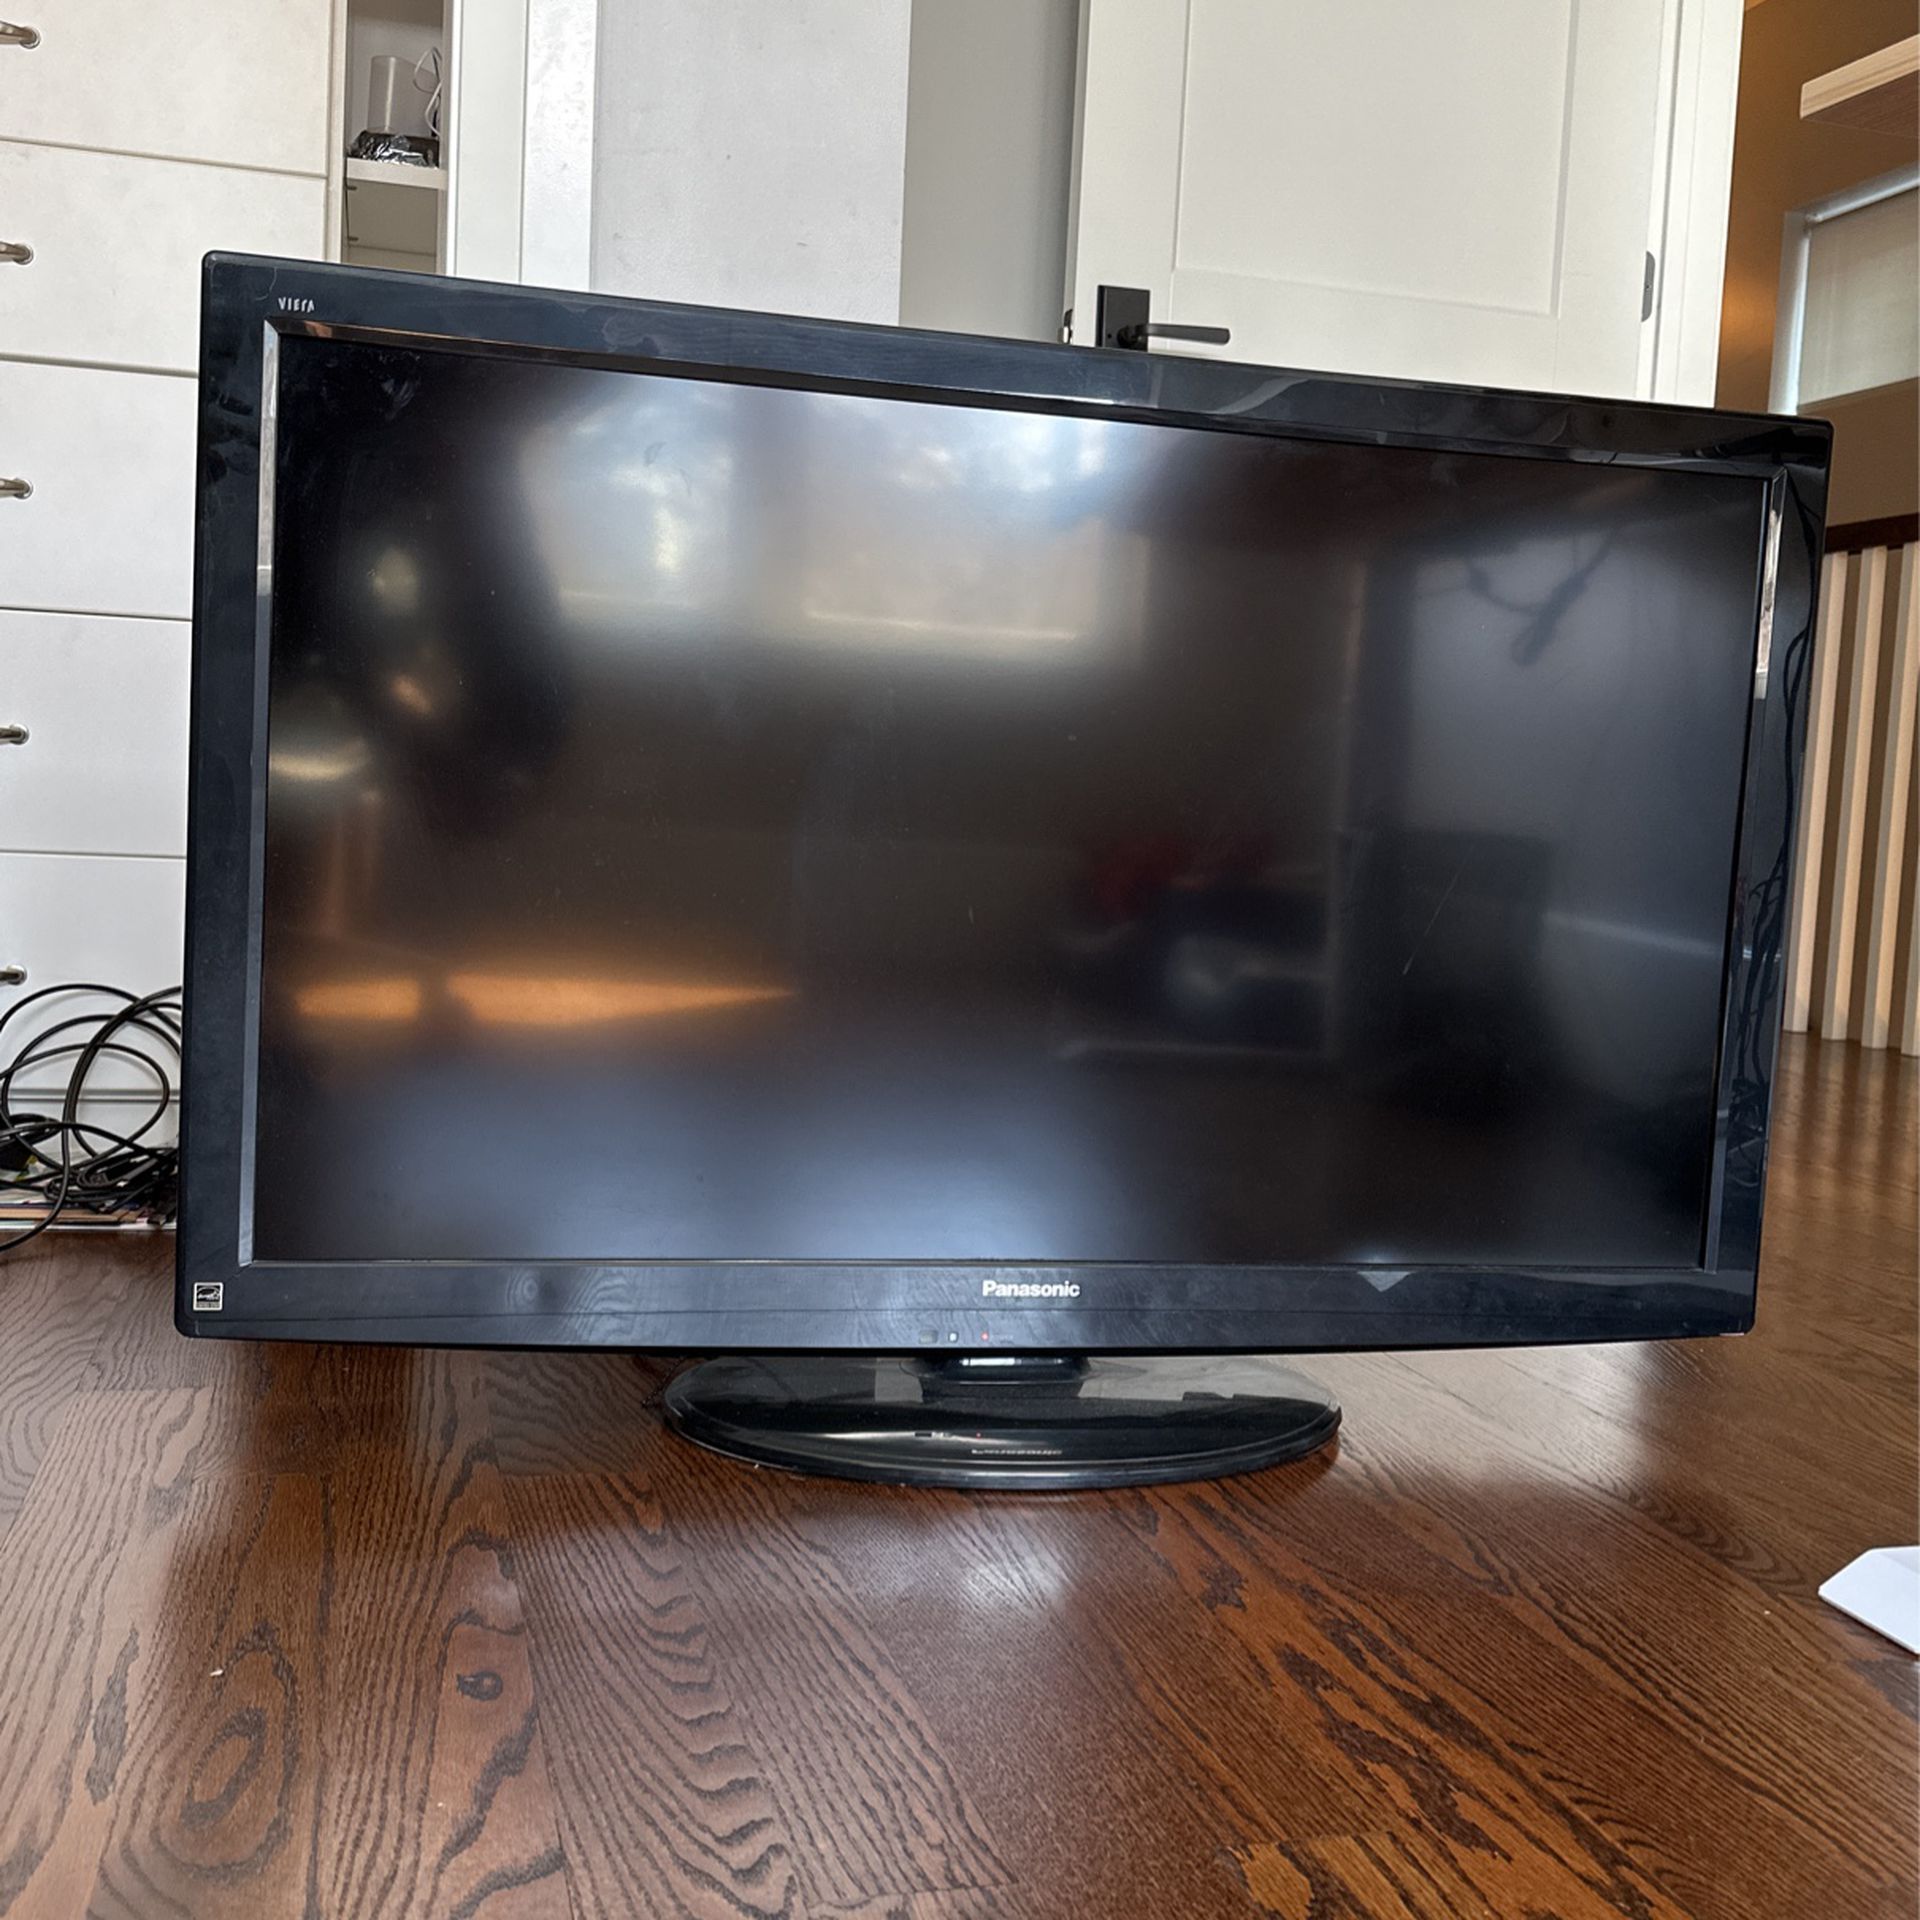 42” Flatscreen Panasonic TV